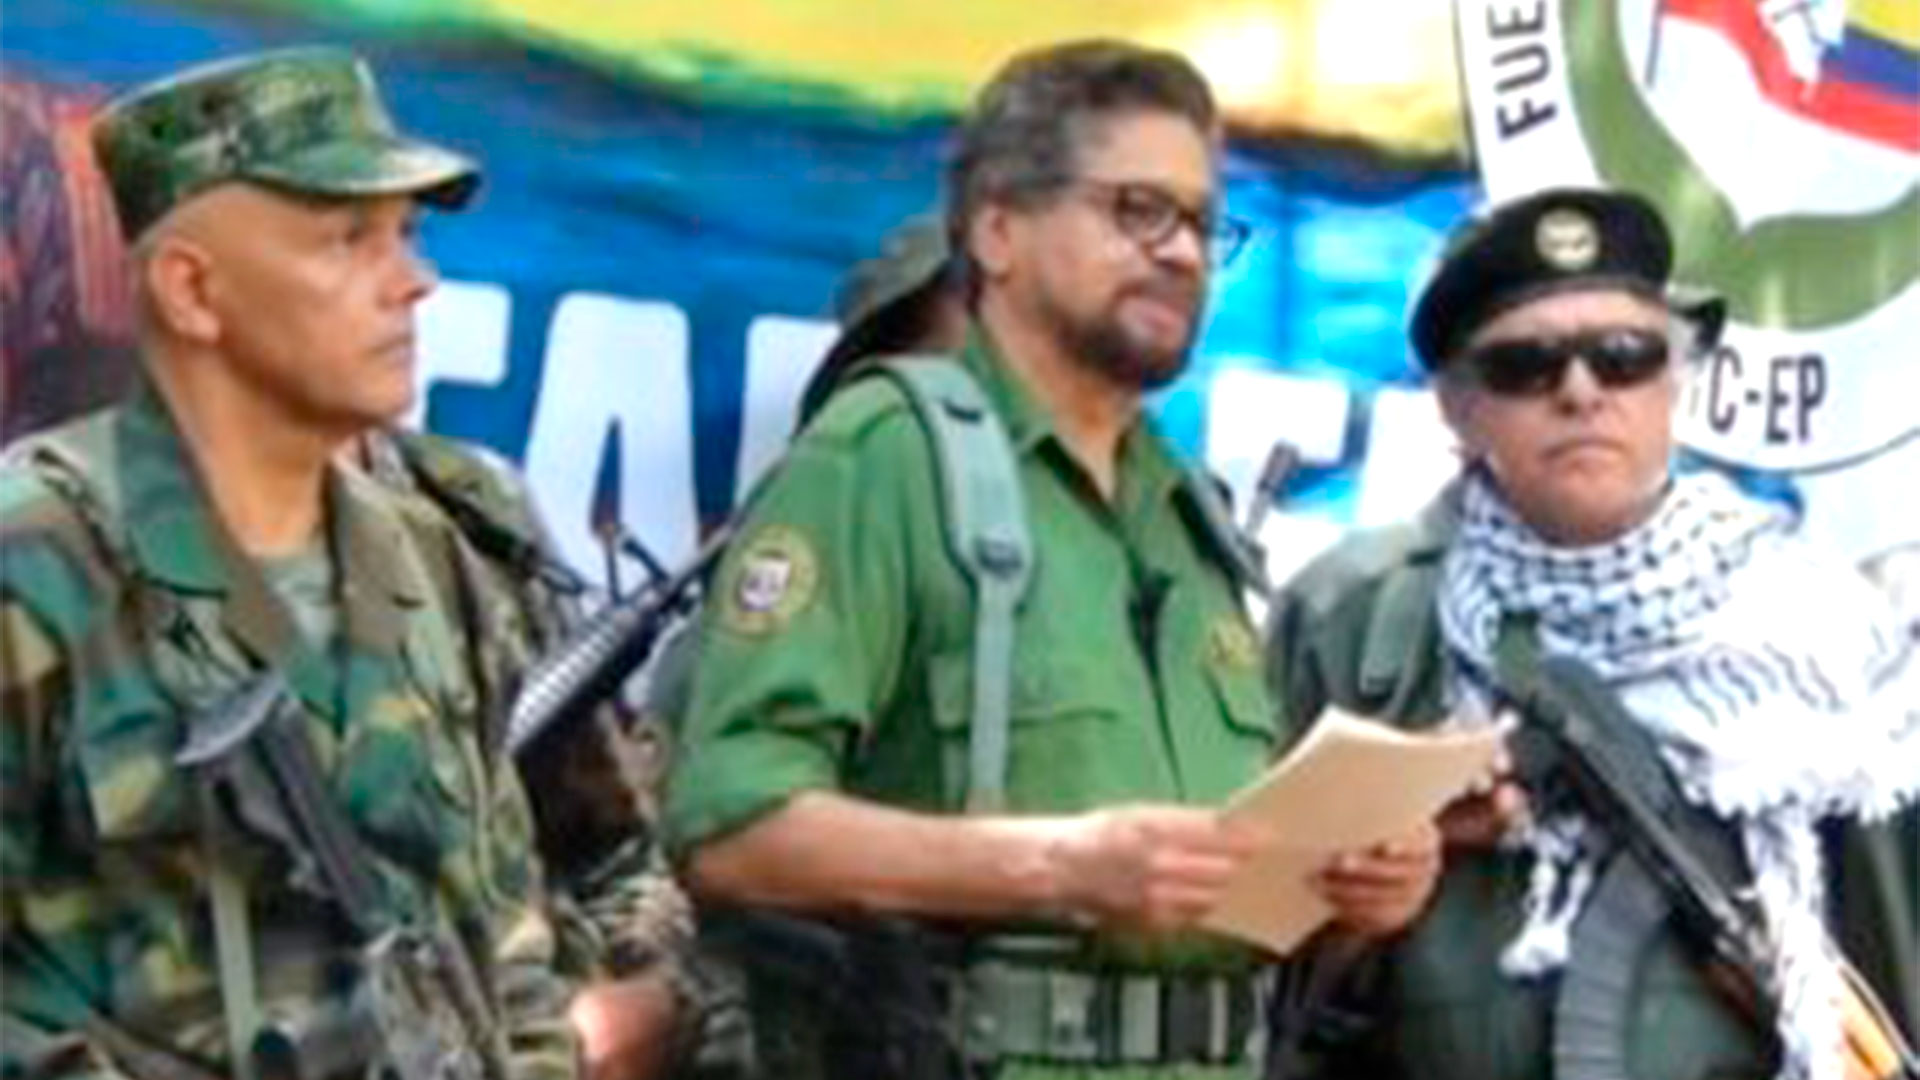 El propósito inmediato es la llegada de las FARC al poder en Colombia con el triunfo de Petro, advierte el coronel Guevara